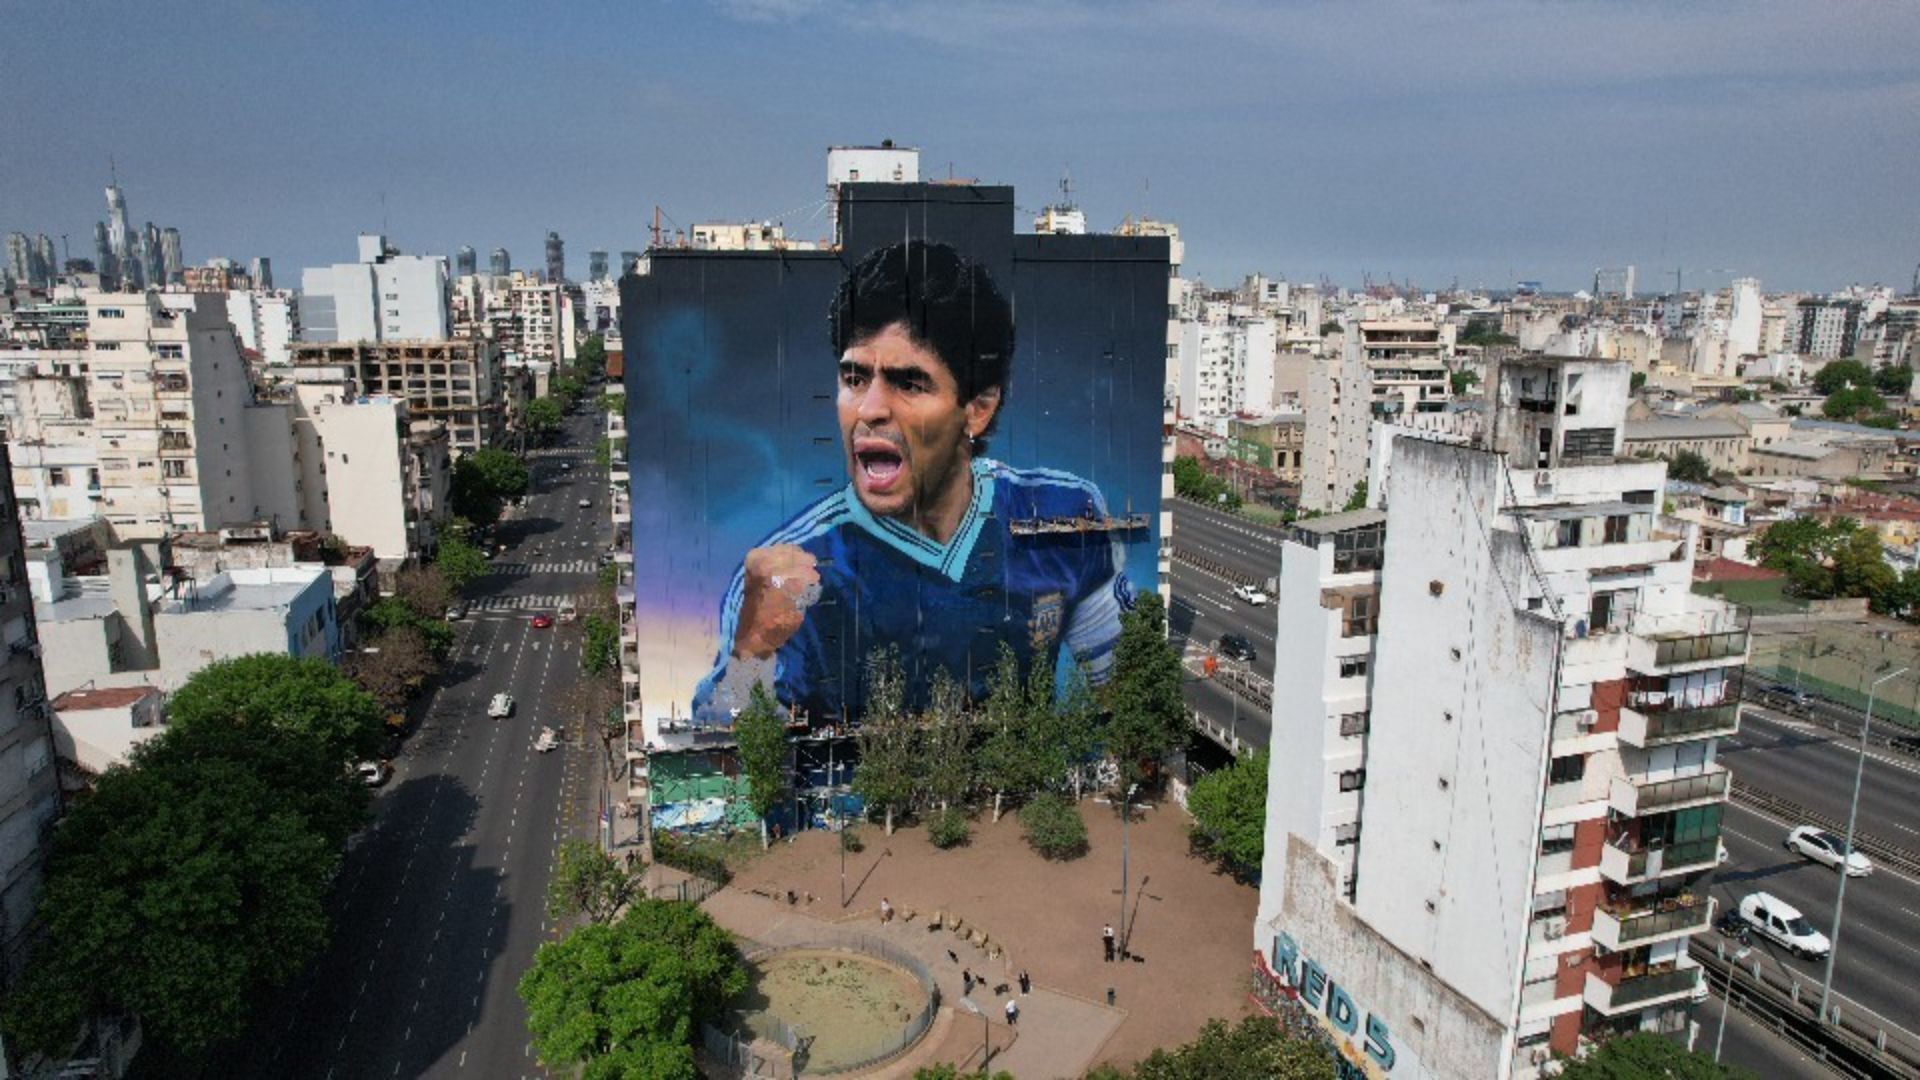 Se inaugura el mural más grande del mundo en honor a Diego Armando Maradona  - Infobae